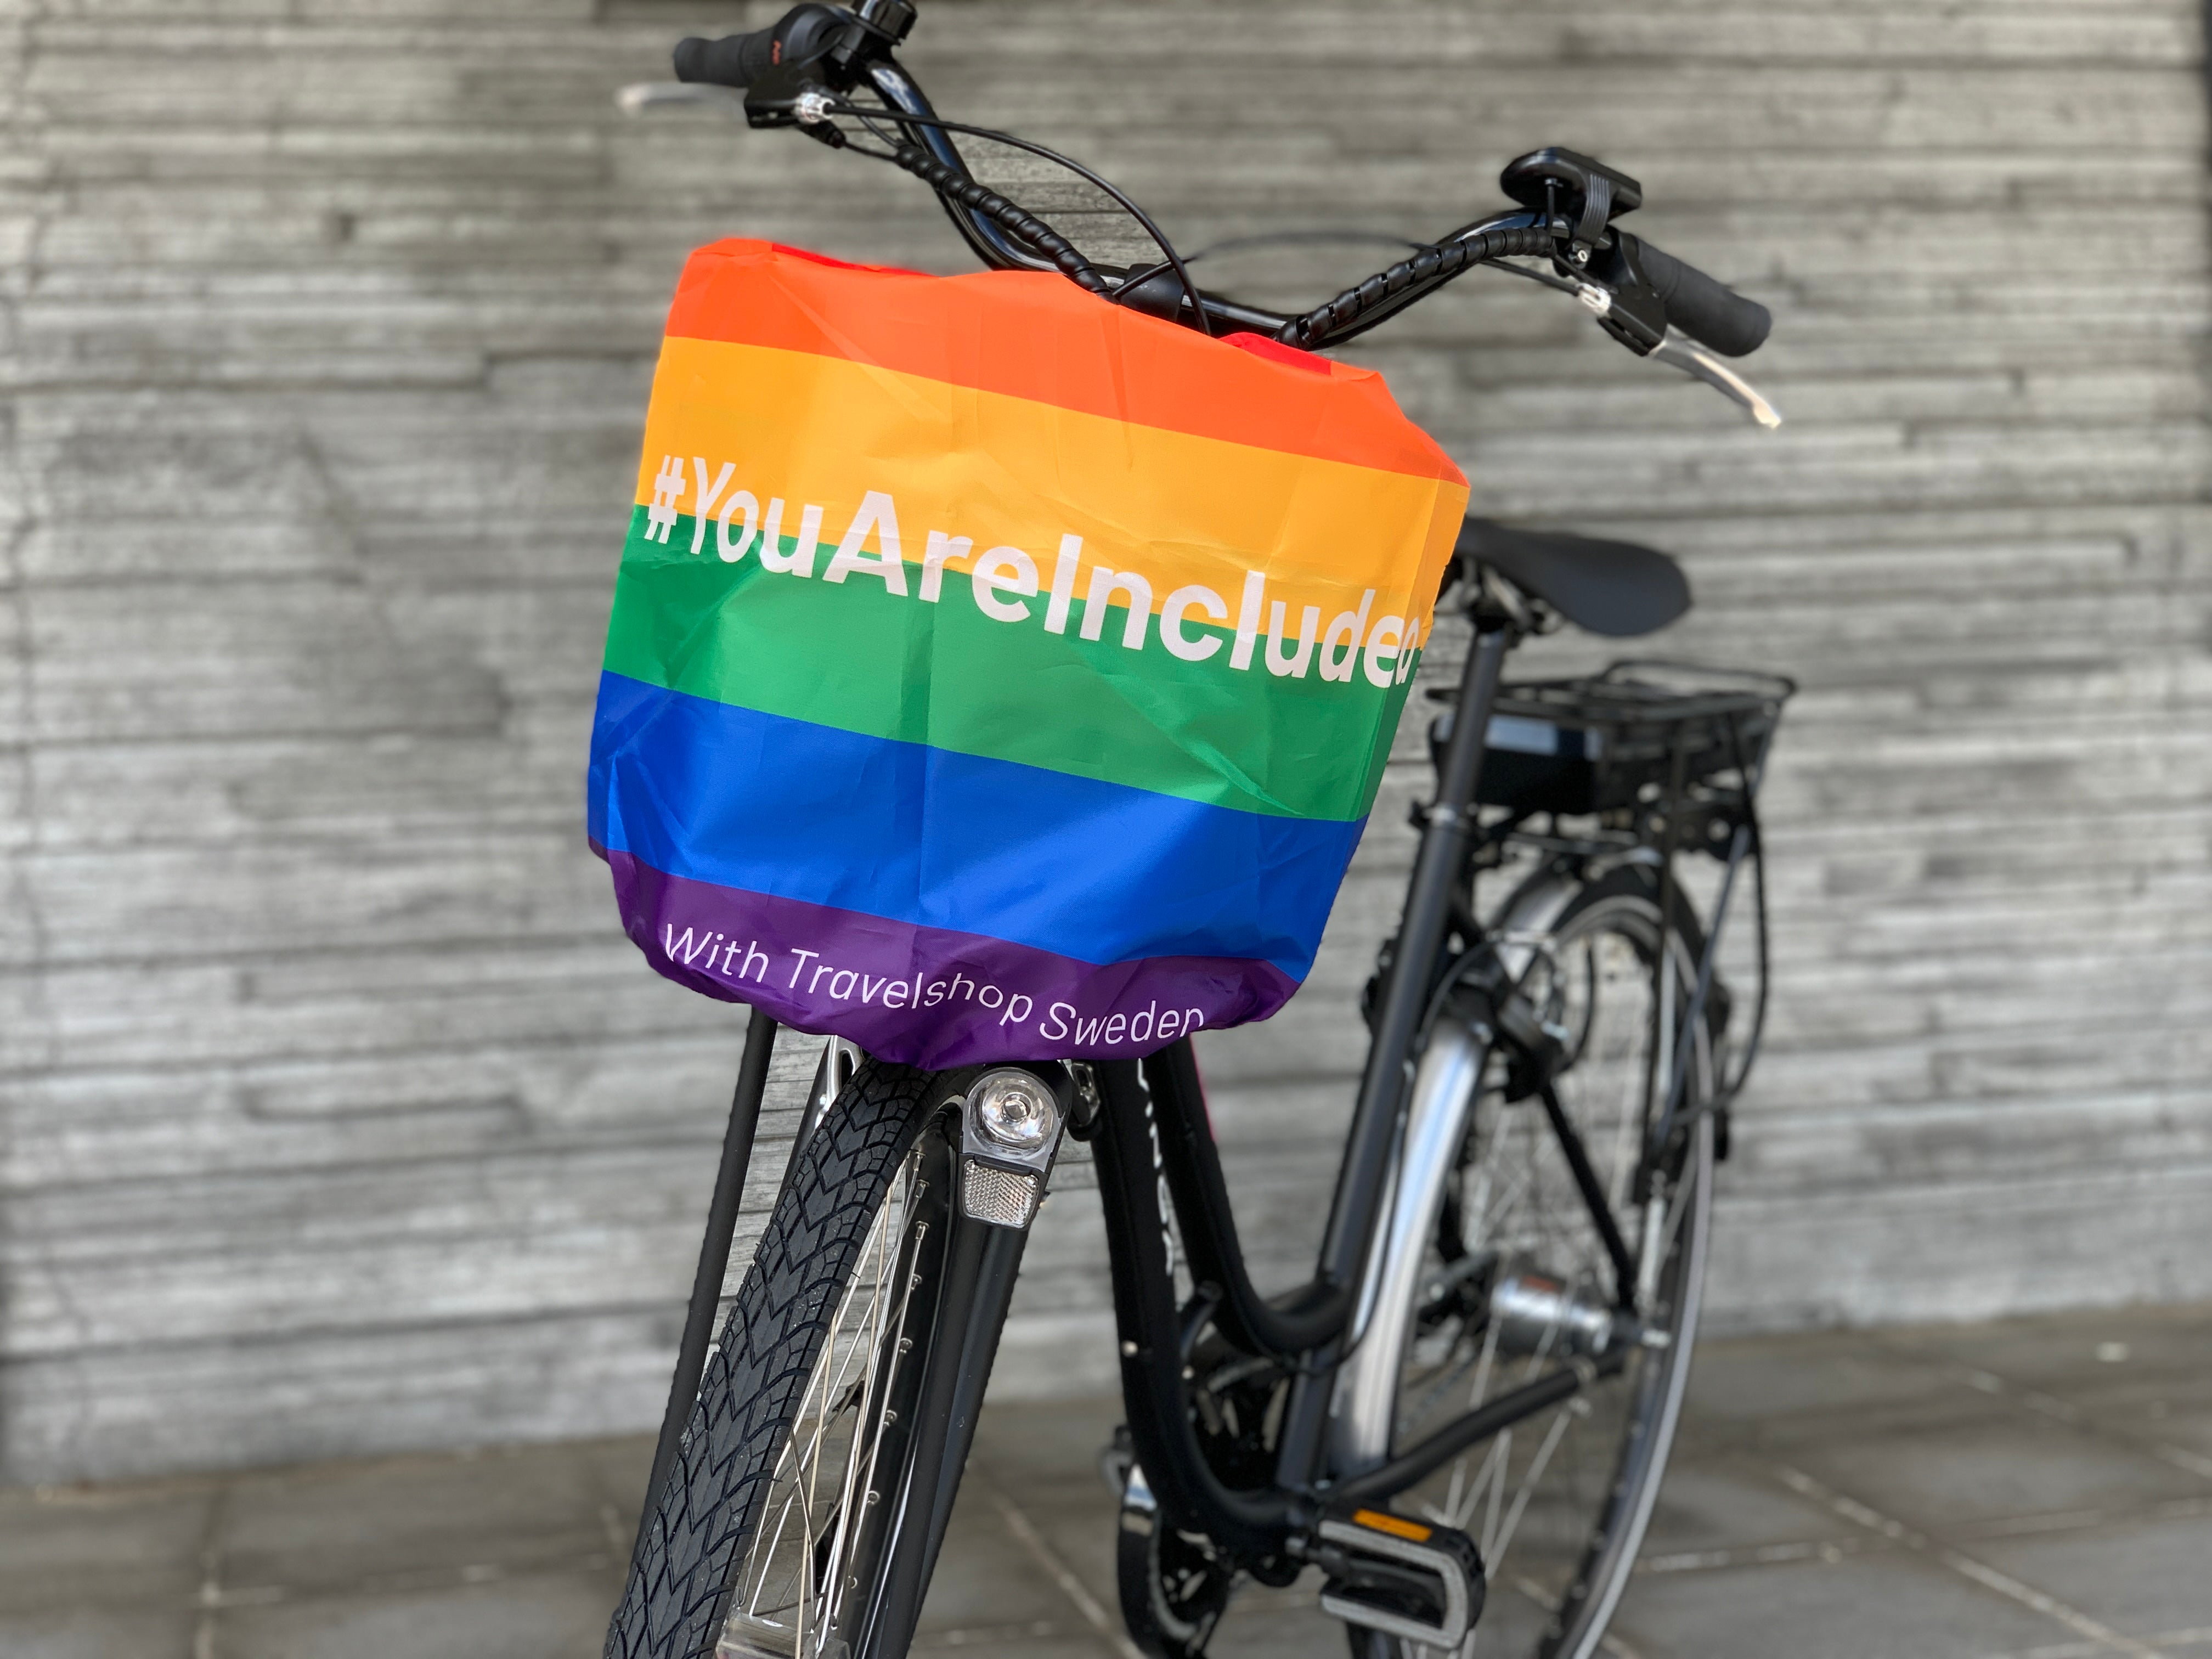 Bike cover - WorldPride